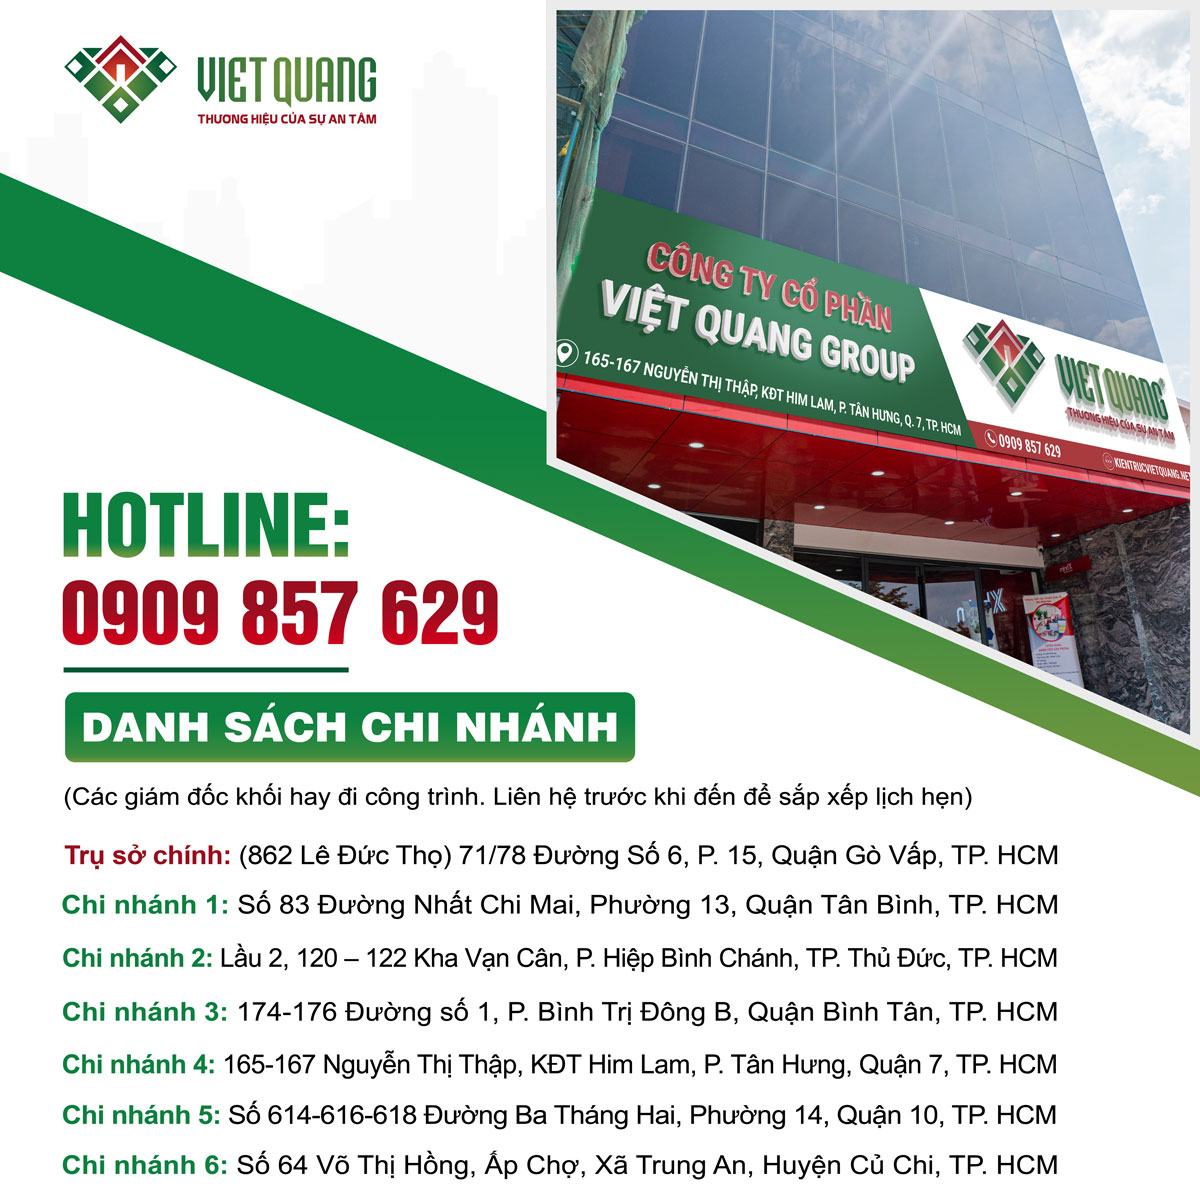 Thông tin liên hệ Việt Quang Group